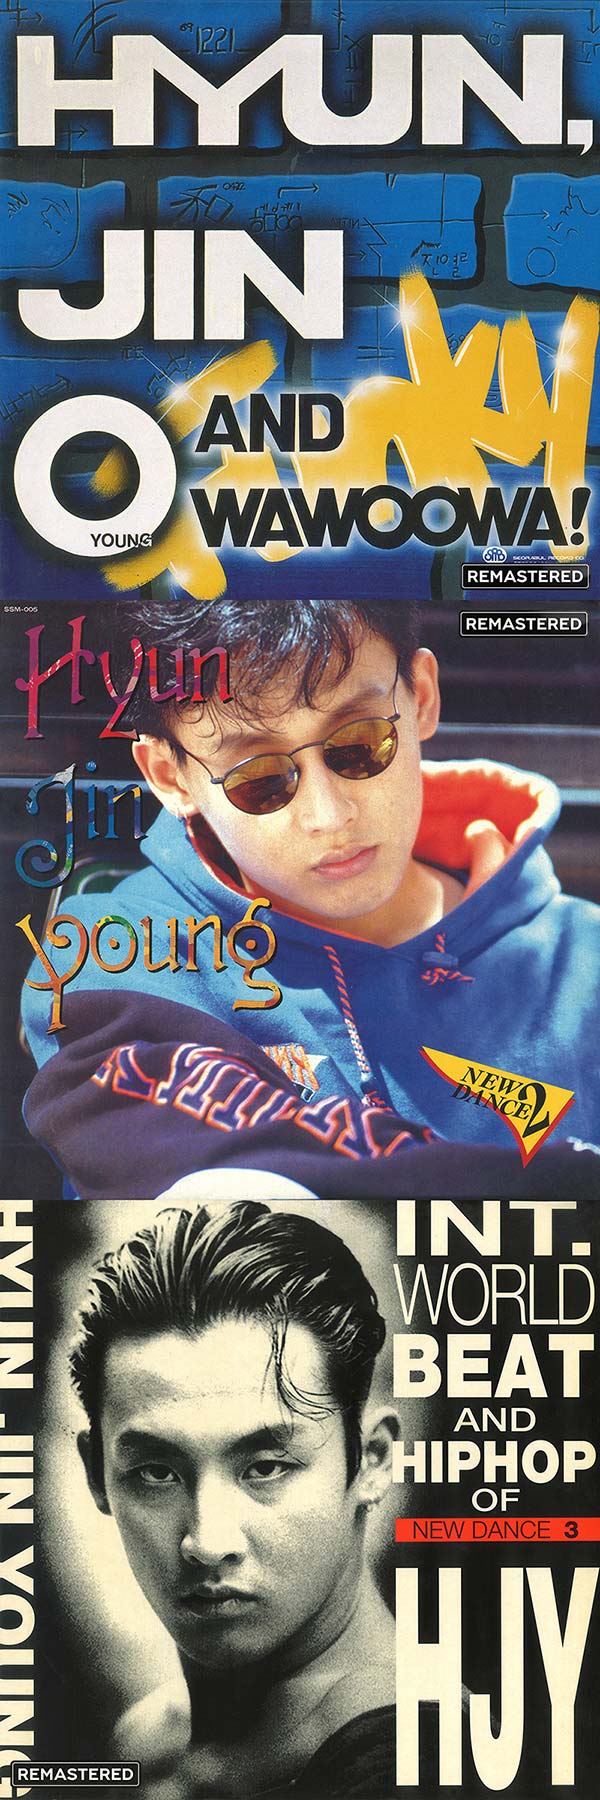 歌手HYUN JIN YOUNG正规1辑～3辑Remaster音源公开，以高音质再次欣赏的第一代代表艺人热门歌曲！(图1)